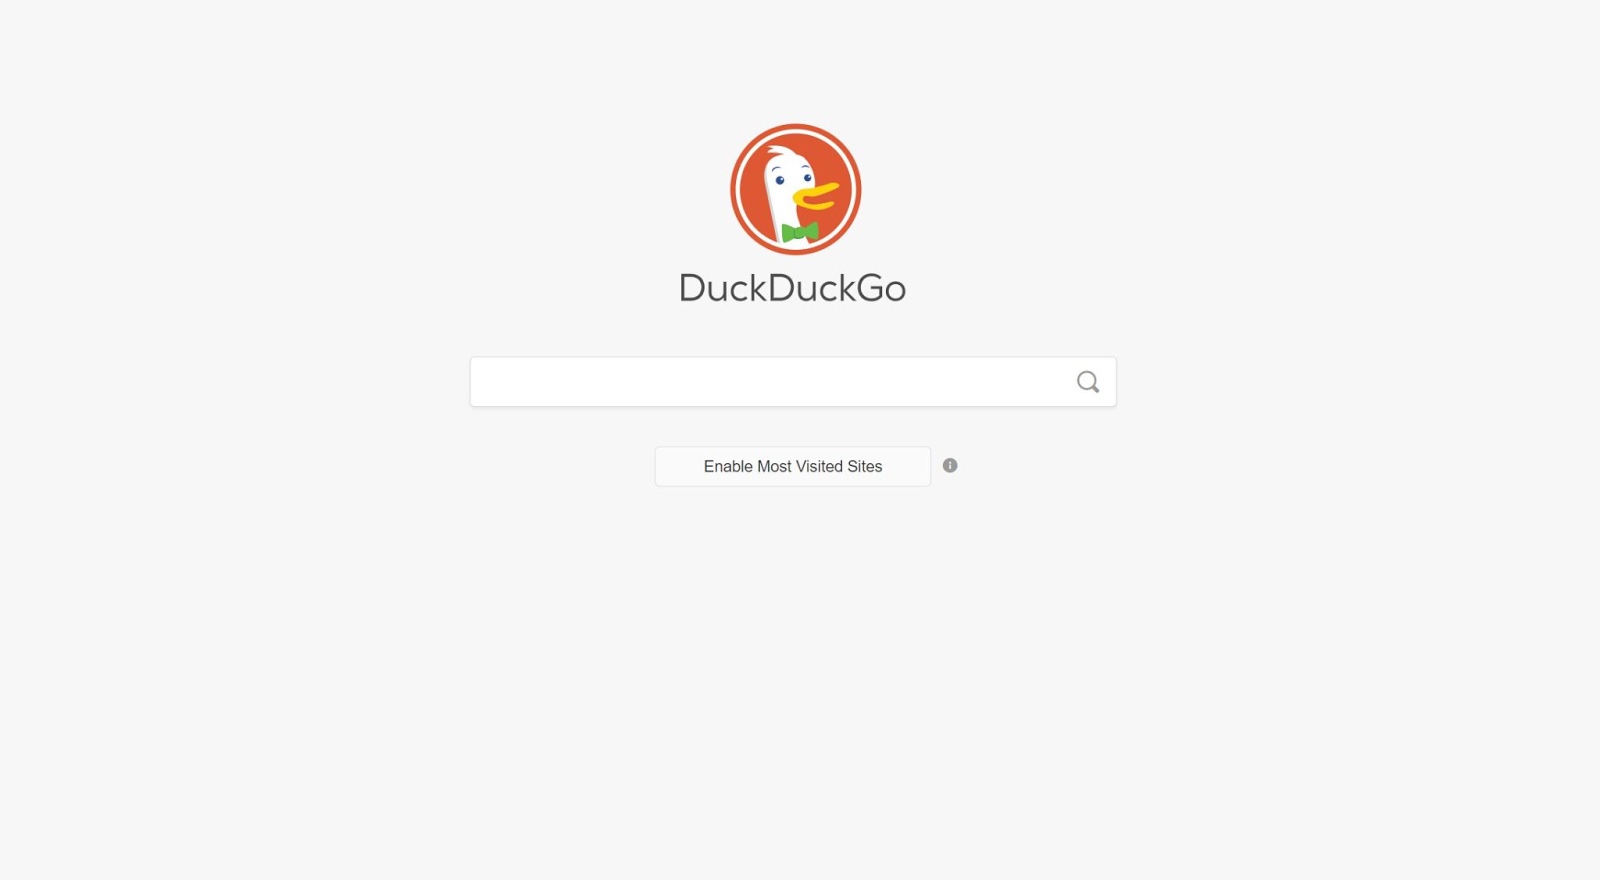 Personnalisez votre expérience DuckDuckGo et permettez-lui d'afficher vos sites les plus visités.